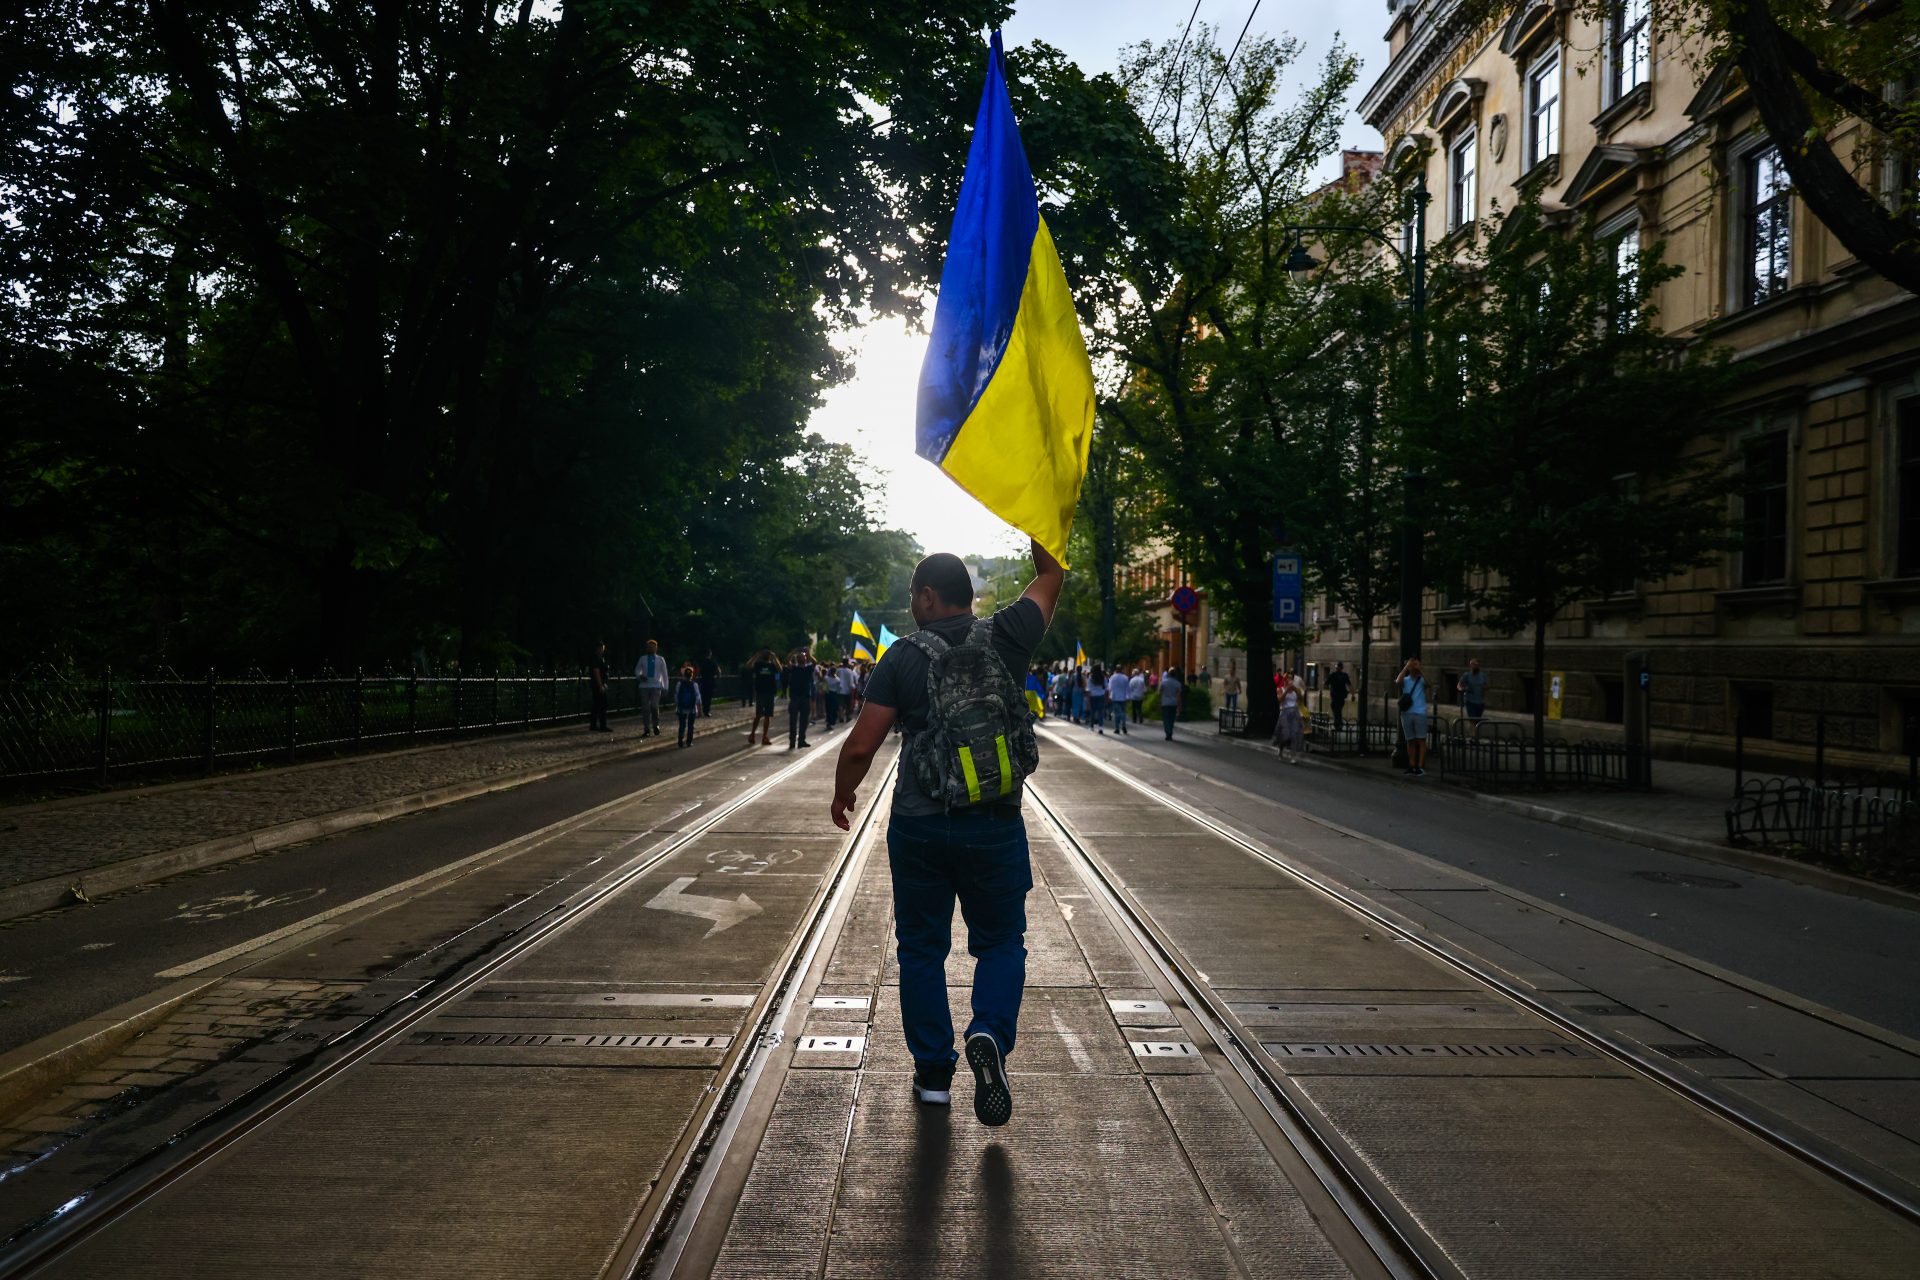 A morale win for Ukraine